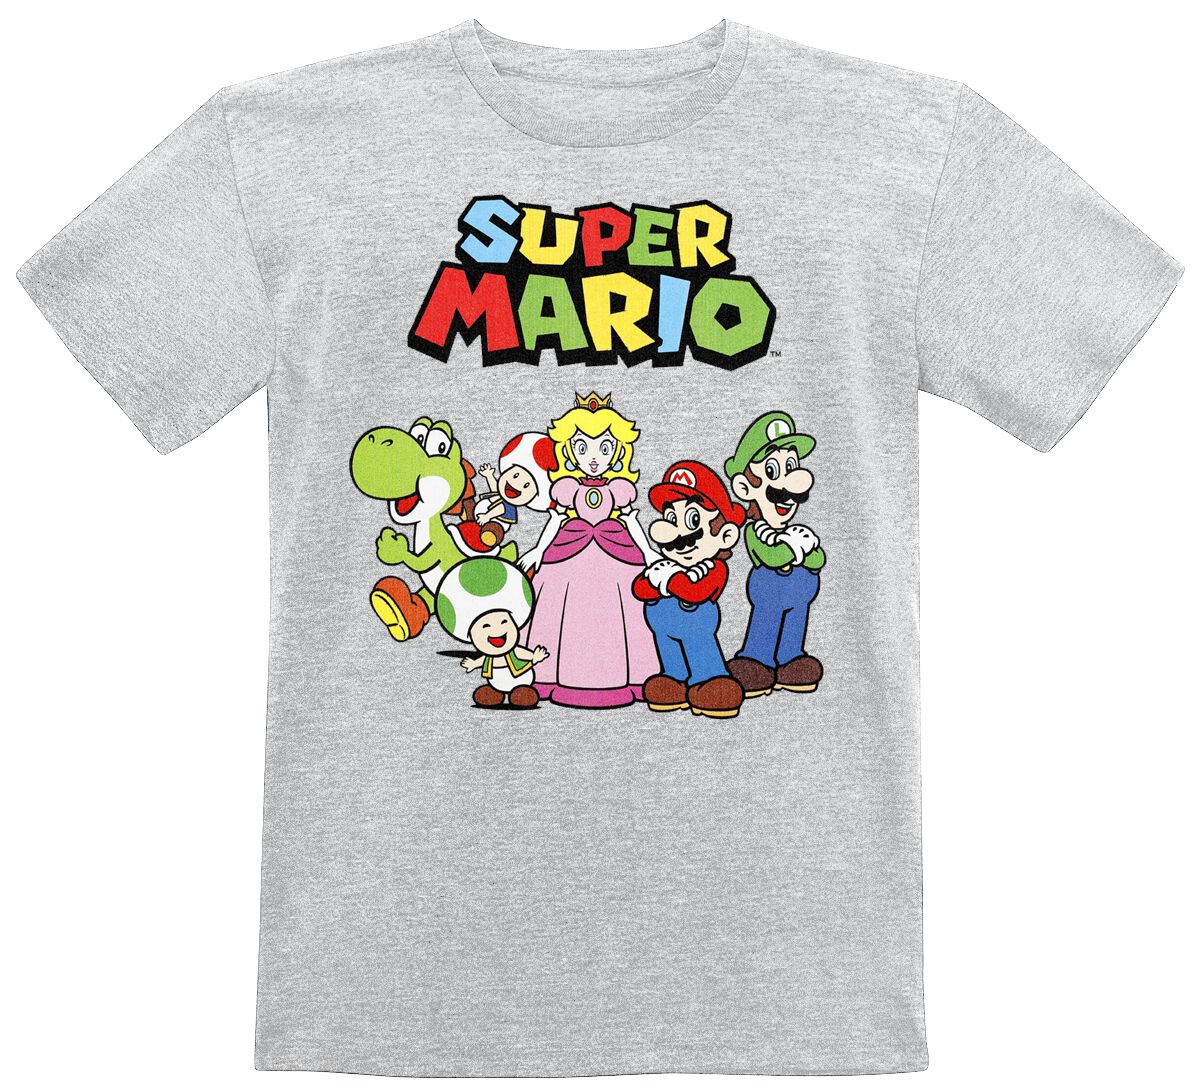 Super Mario - Gaming T-Shirt für Kinder - Kids - Charaktere - für Mädchen & Jungen - grau meliert